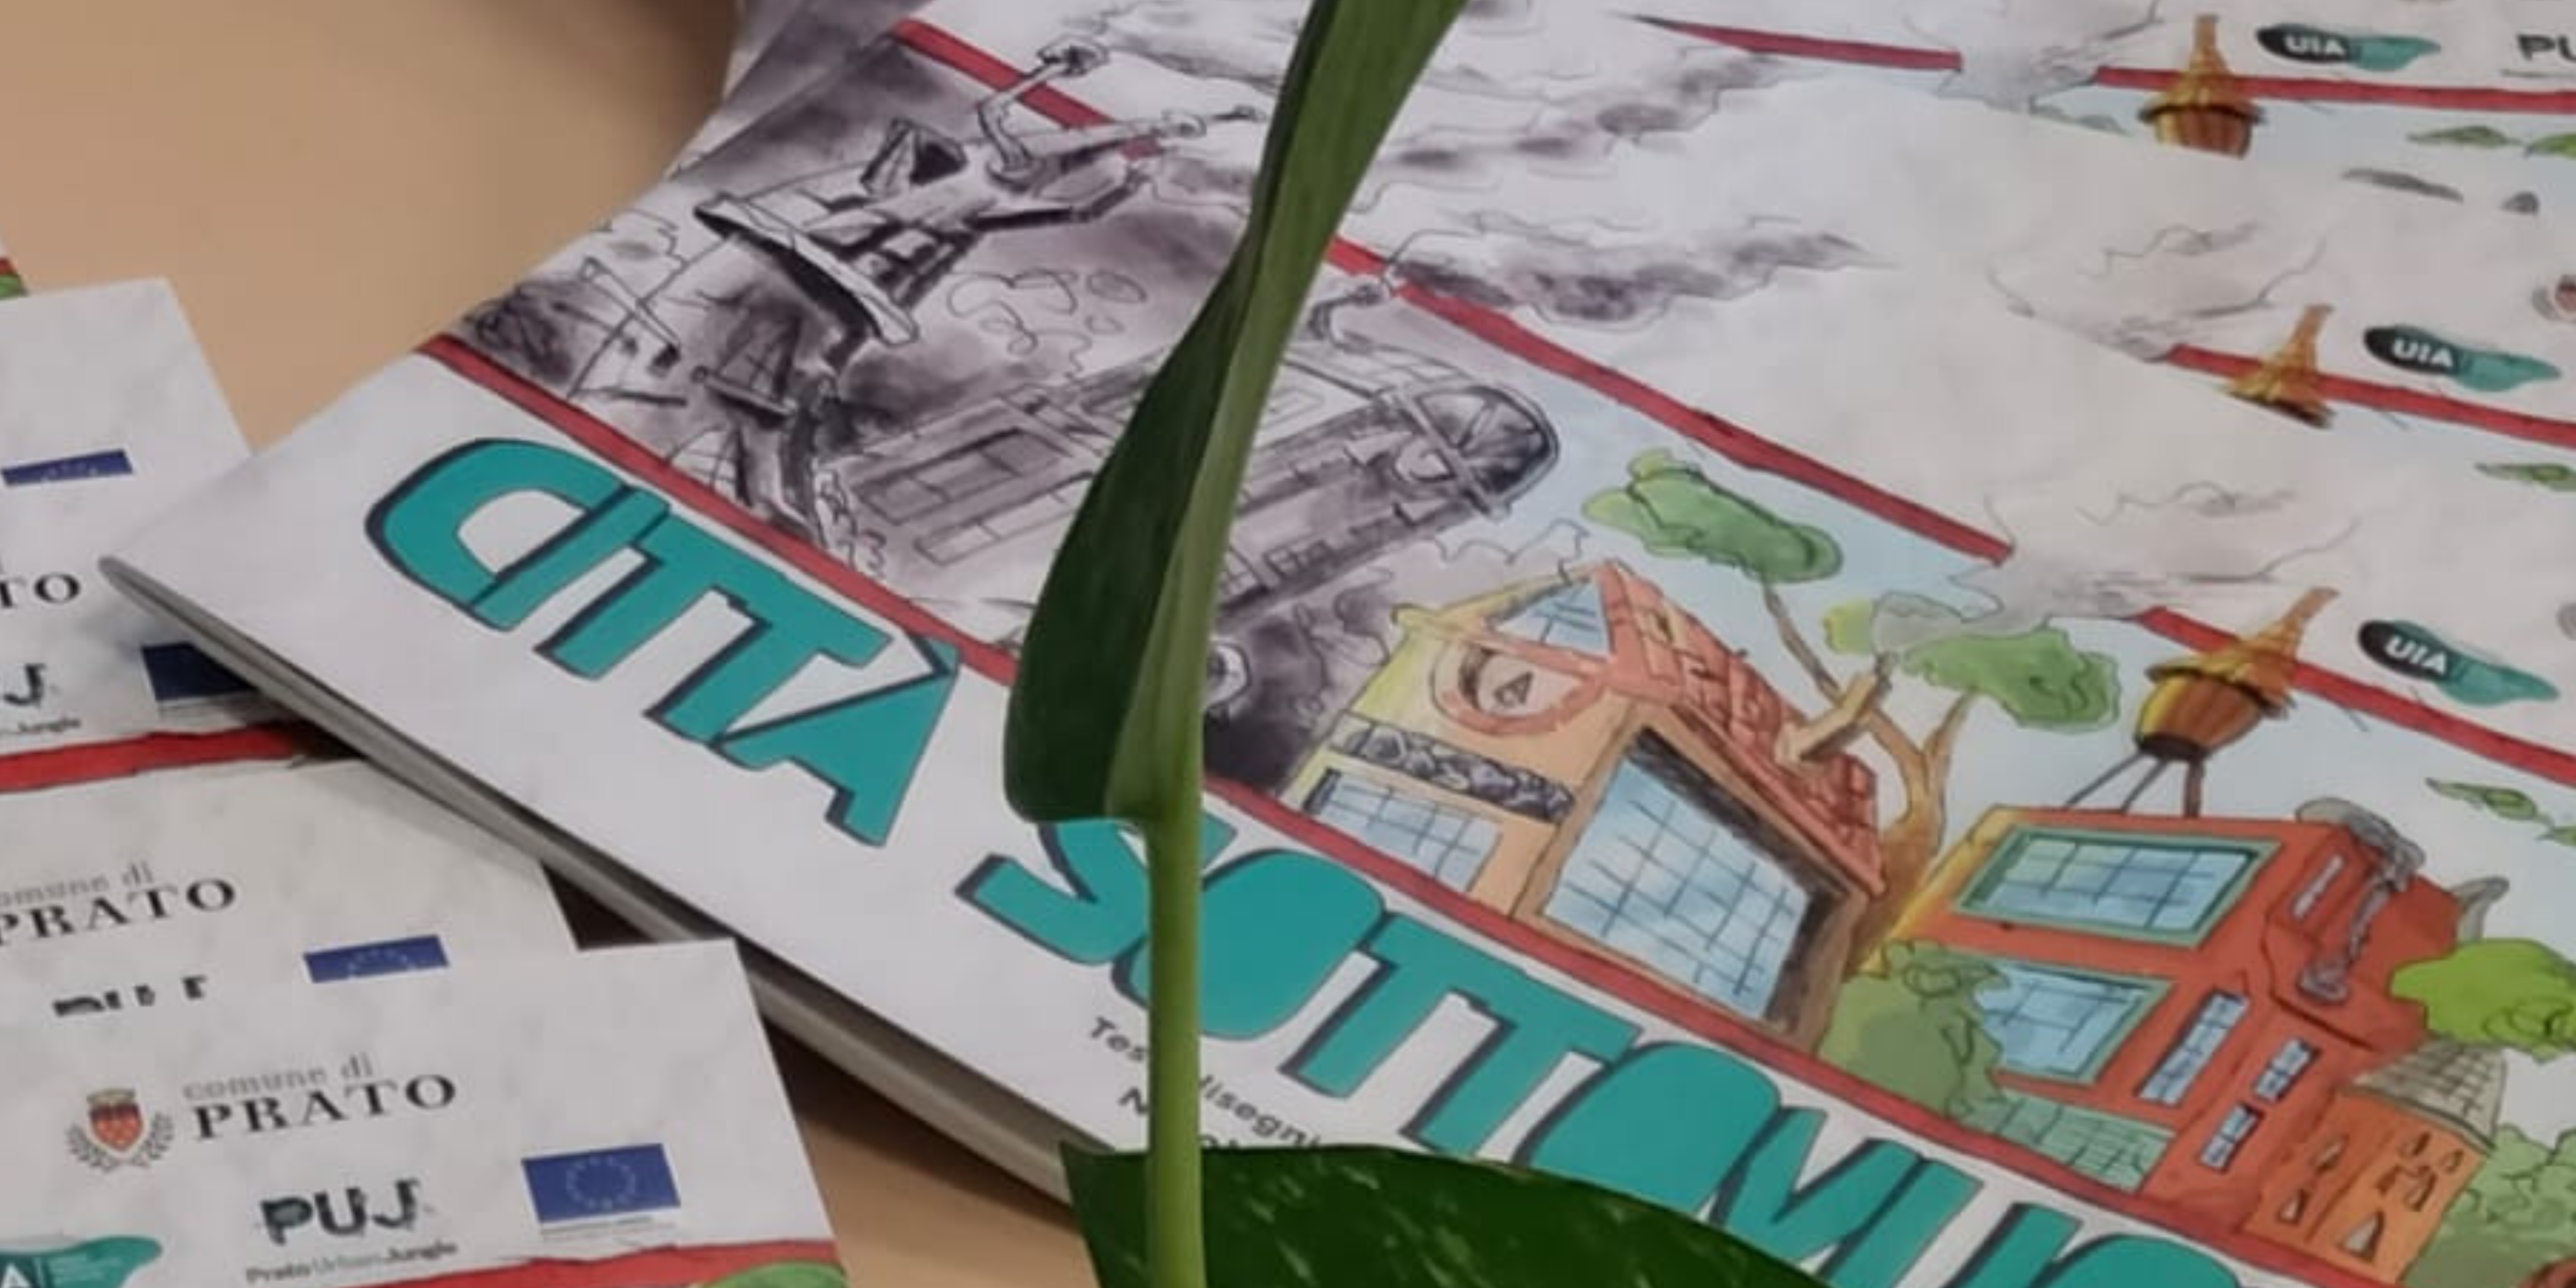 Il fumetto del progetto Prato Urban Jungle “Città sottovuoto” in omaggio a tutte le scuole primarie per spiegare ai bambini l’importanza della sostenibilità ambientale